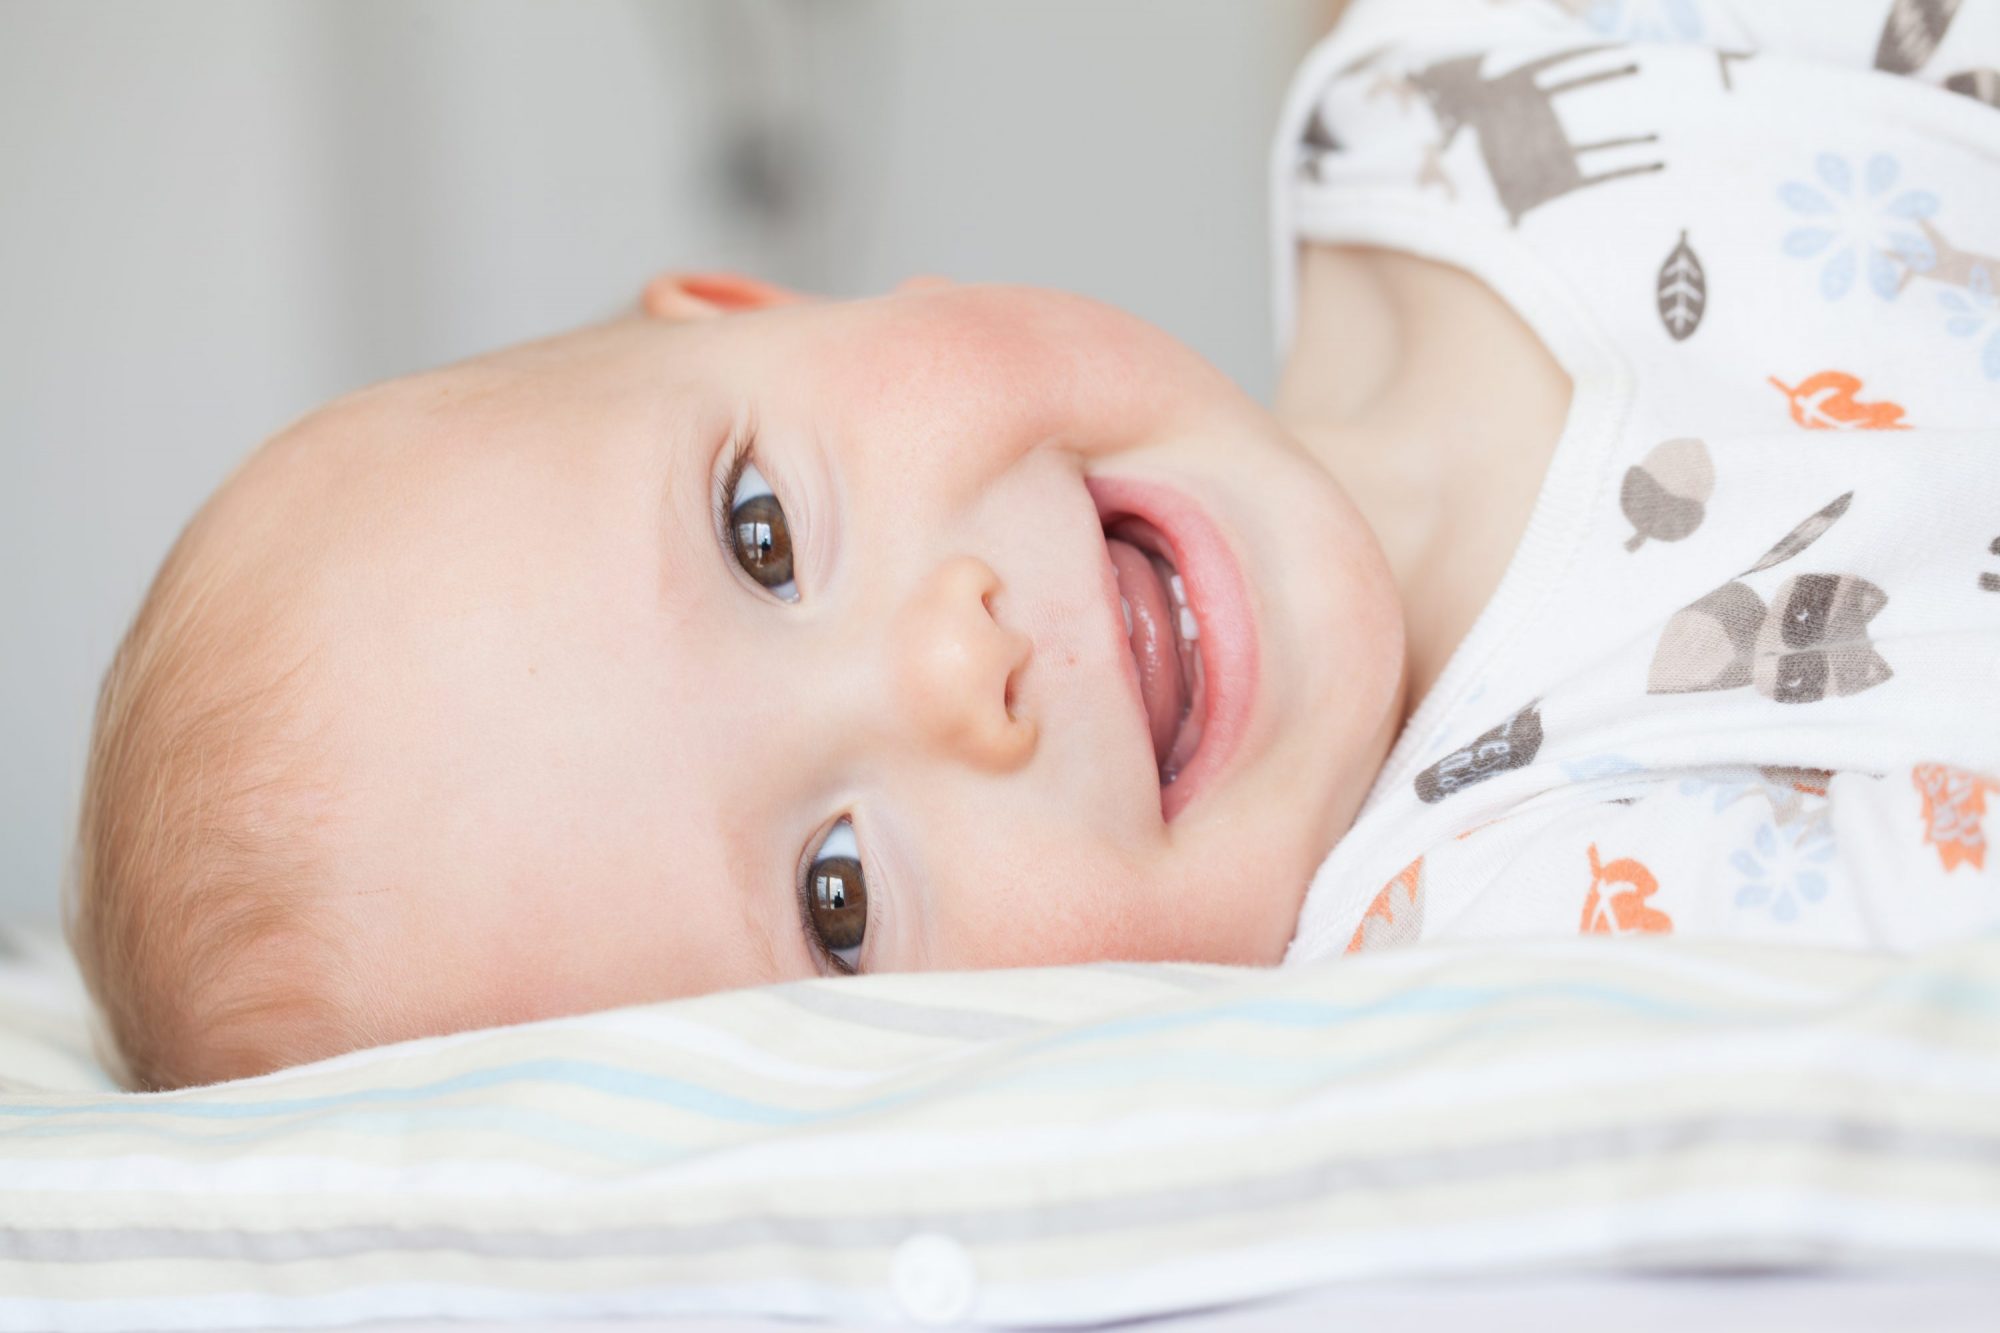 Dents bébé qui percent : Symptômes et soulager bébé.